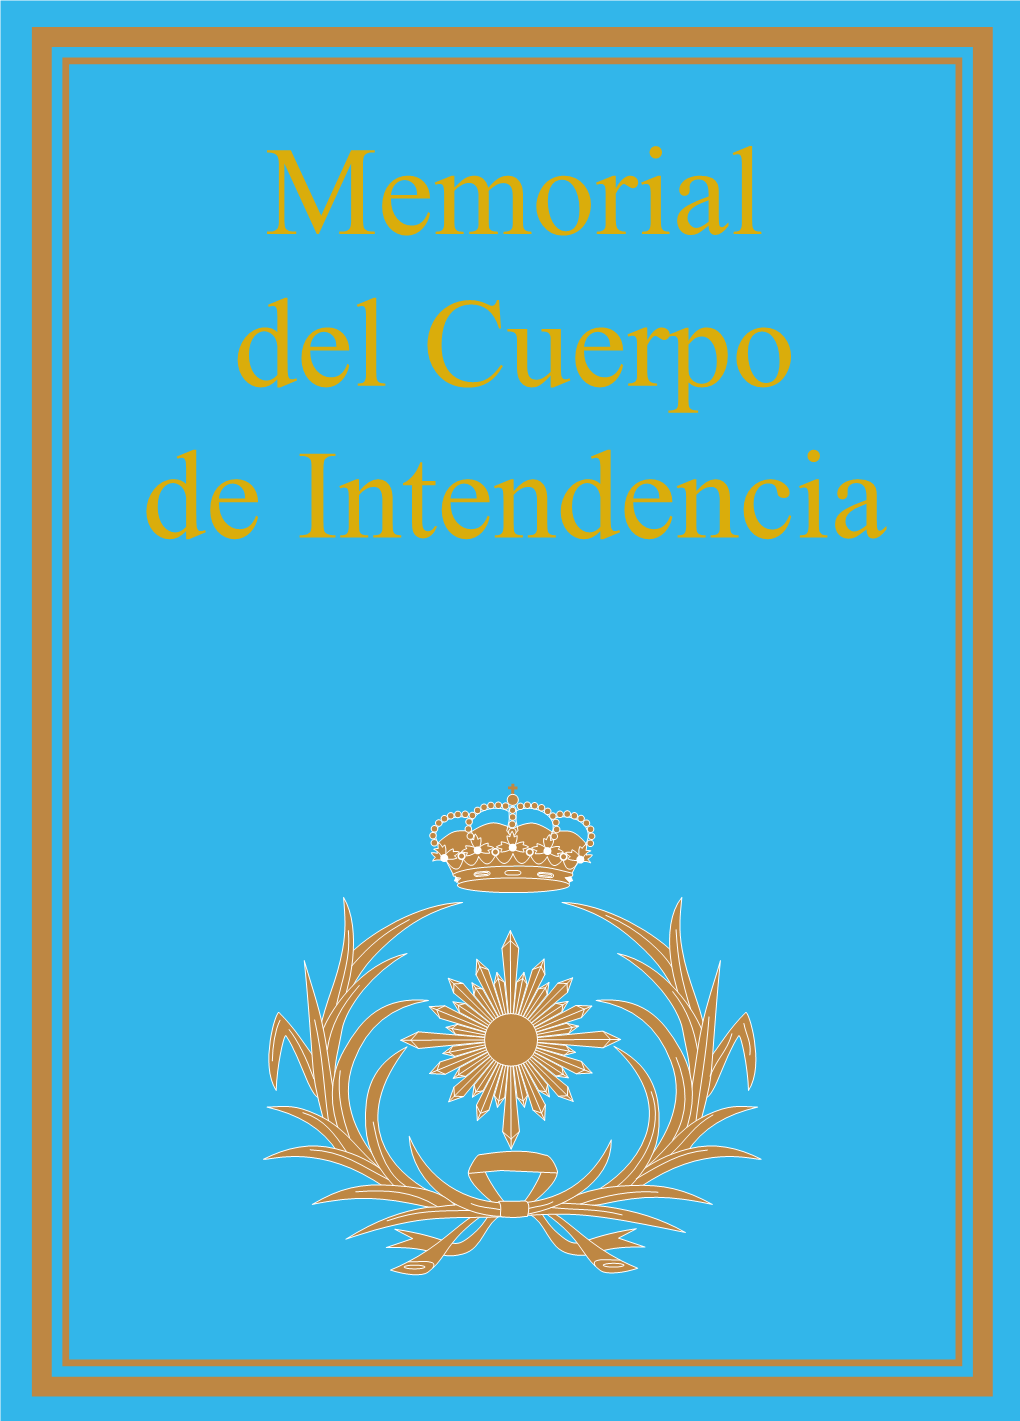 Memorial Del Cuerpo De Intendencia Cubierta Mem Intendencia2008:Cubierta Mem Intendencia-Buena 24/06/09 12:33 Página 2